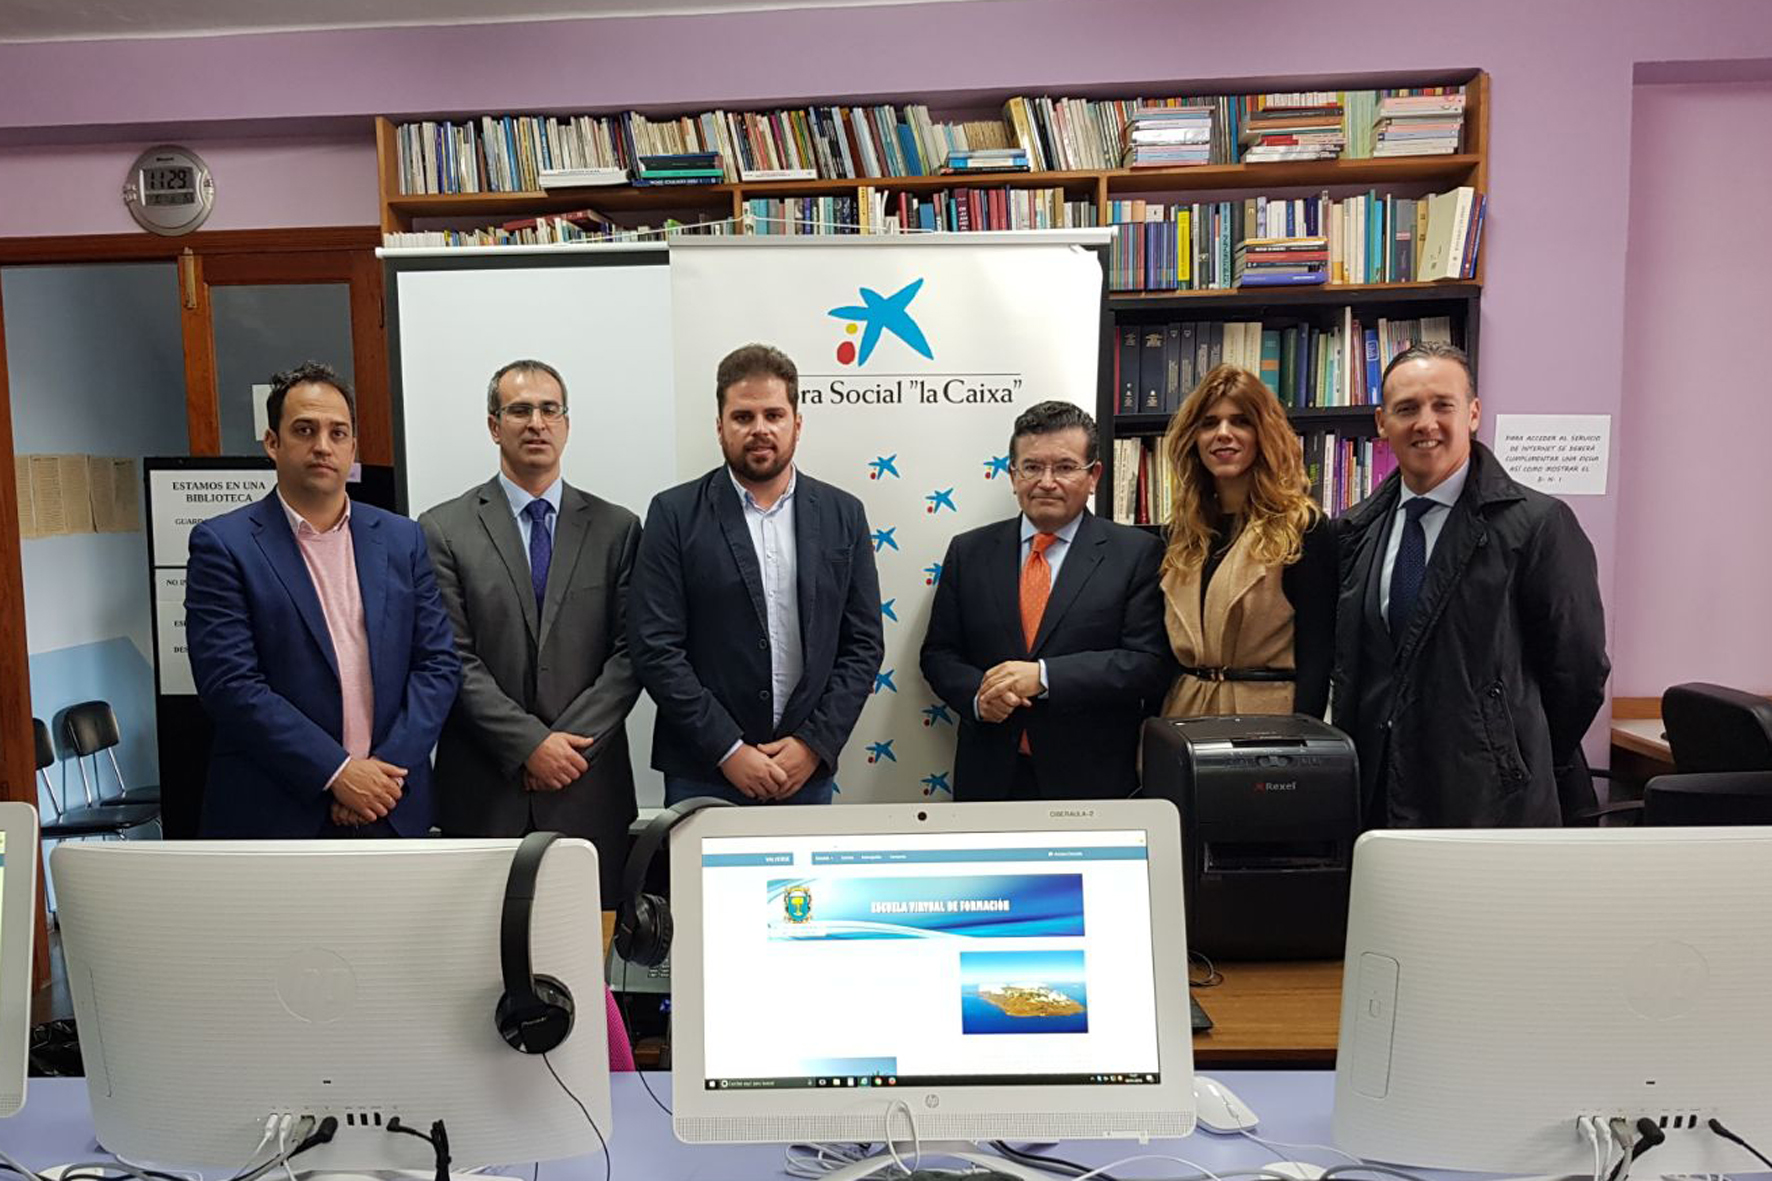 Valverde y la Obra Social de La Caixa inauguran una ciberaula en la Biblioteca municipal